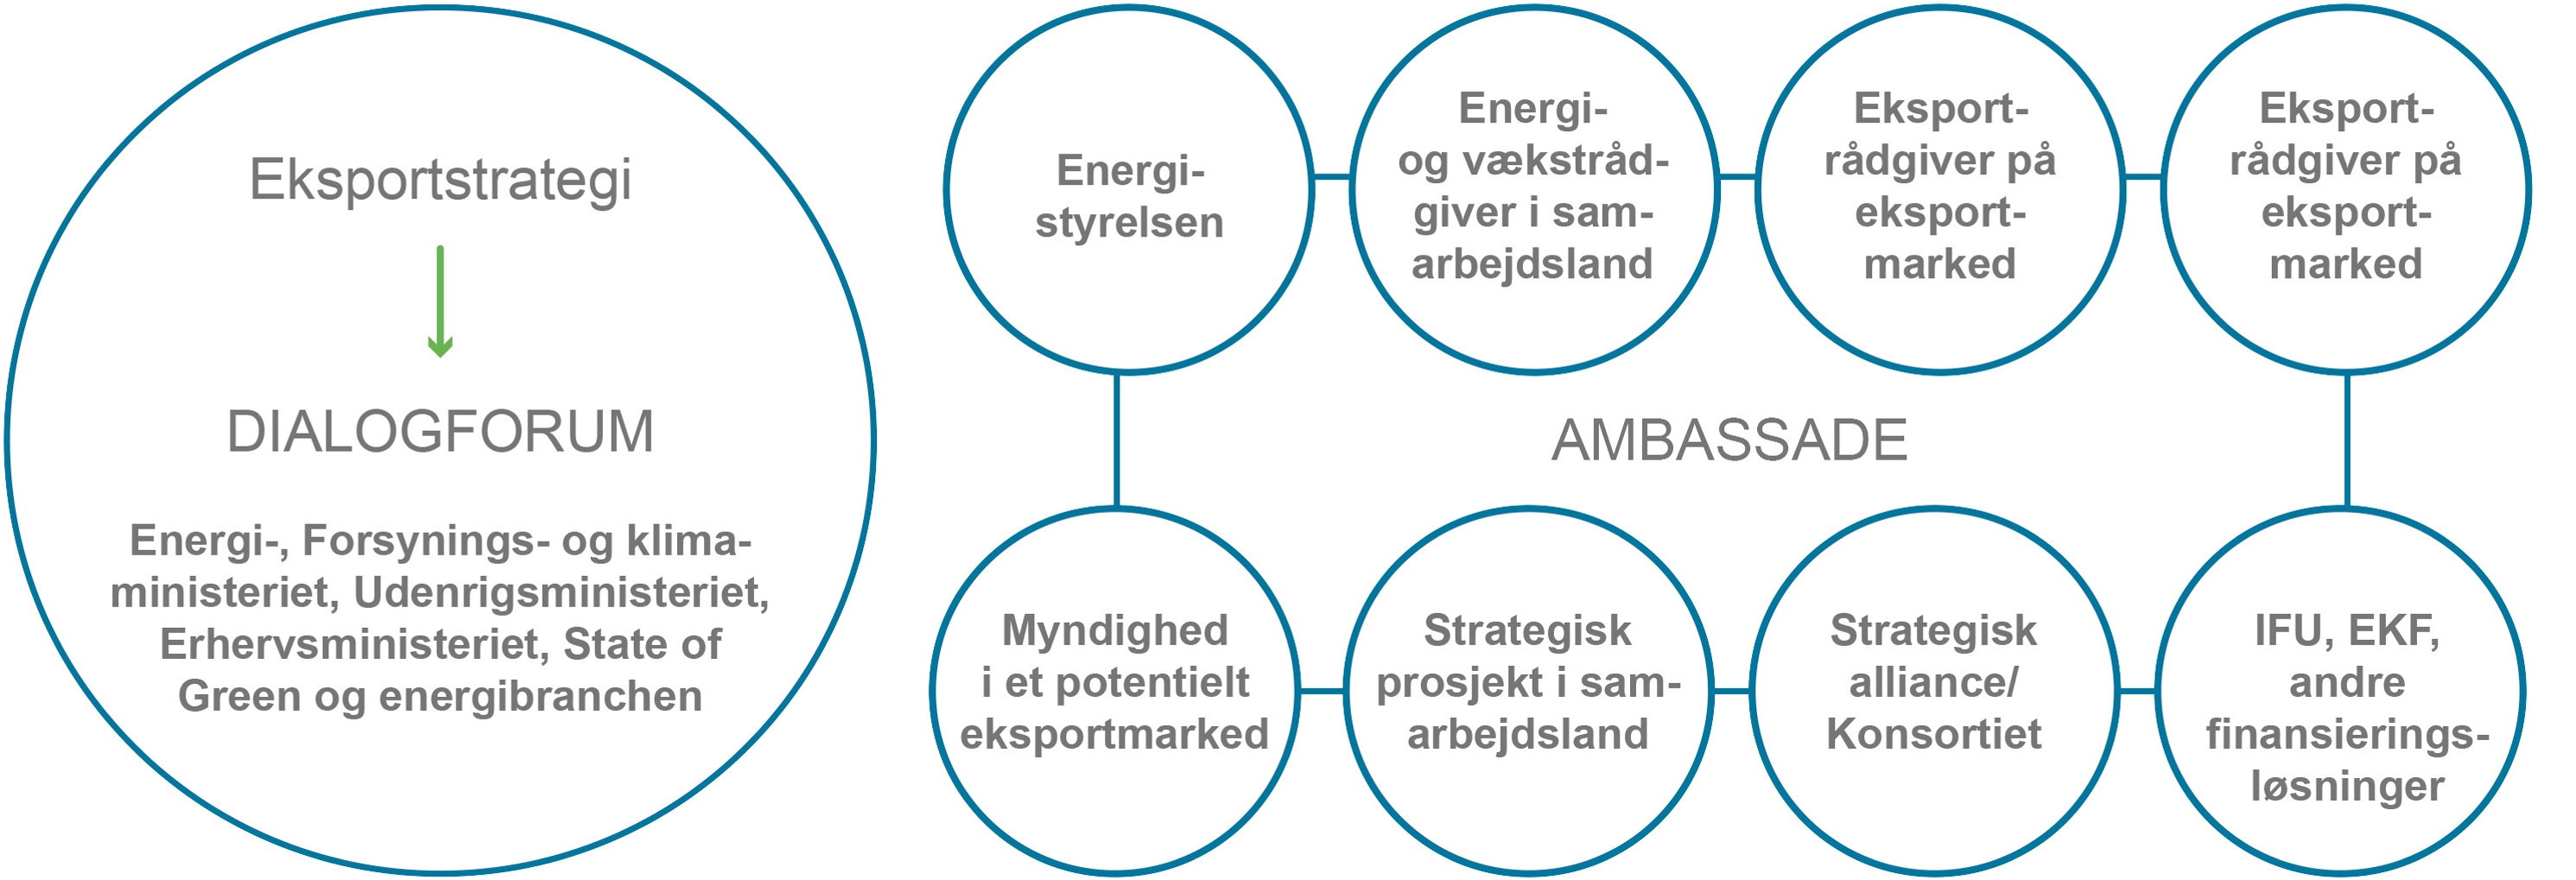 Illustrasjon som viser Eksportstrategi for Energiområdet (Danmark)